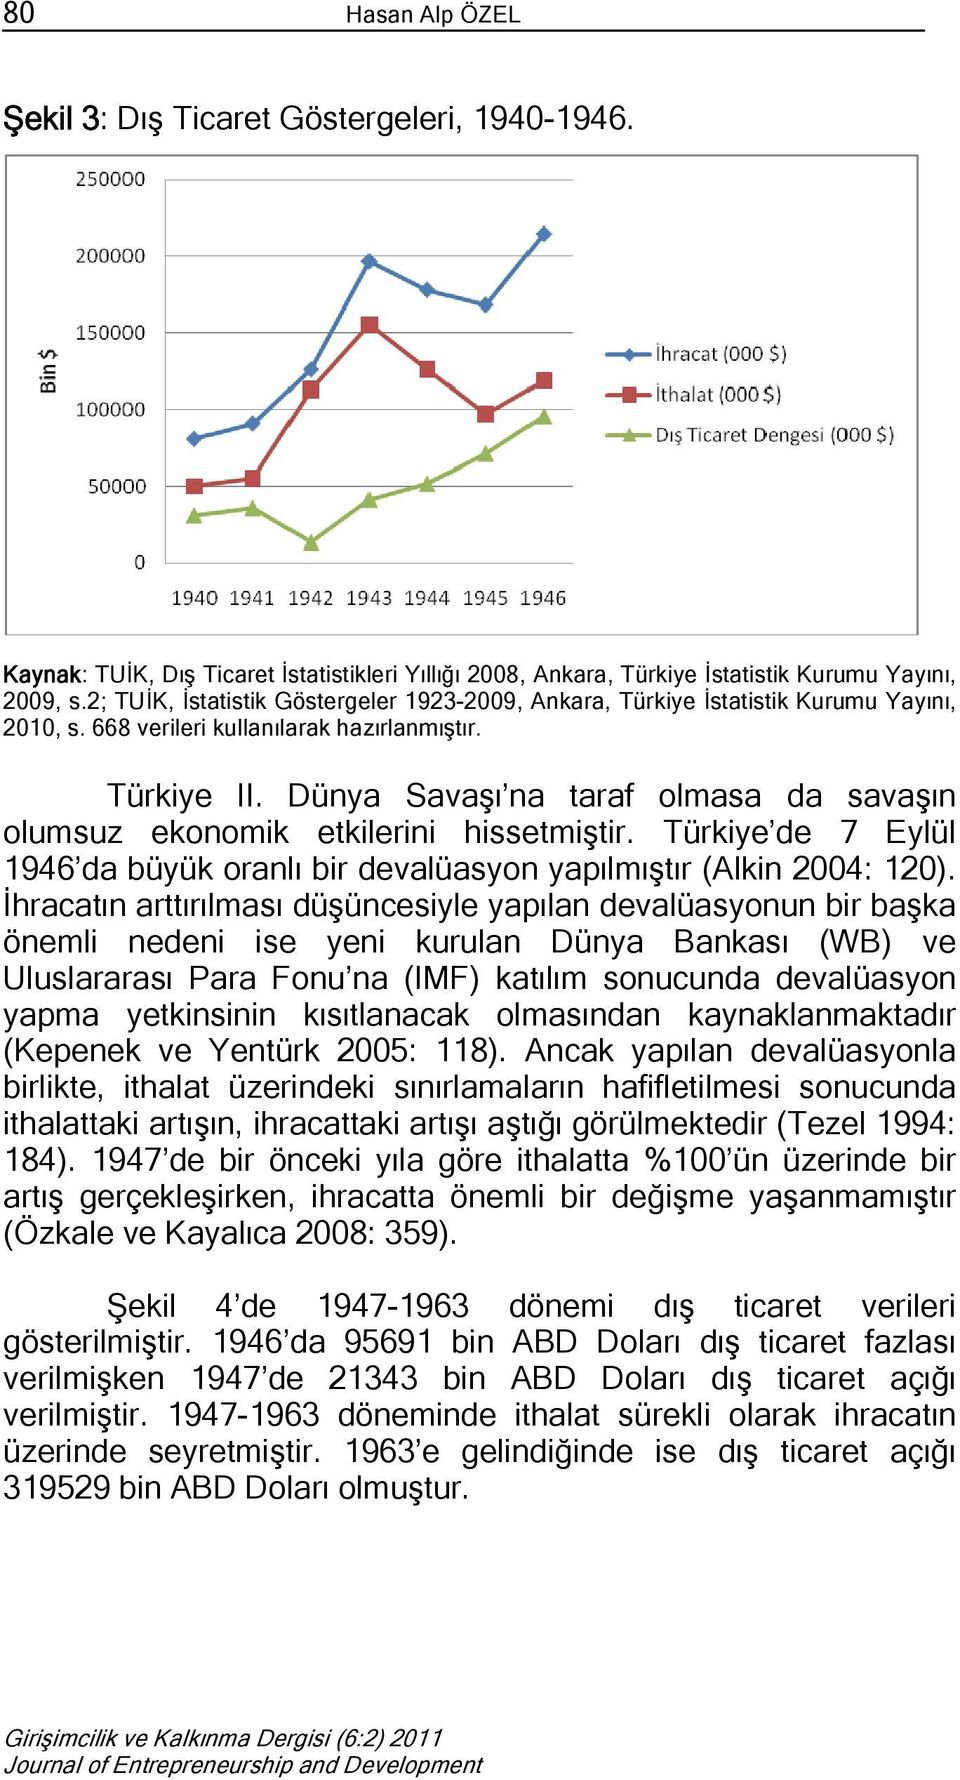 Dünya Savaşı na taraf olmasa da savaşın olumsuz ekonomik etkilerini hissetmiştir. Türkiye de 7 Eylül 1946 da büyük oranlı bir devalüasyon yapılmıştır (Alkin 2004: 120).